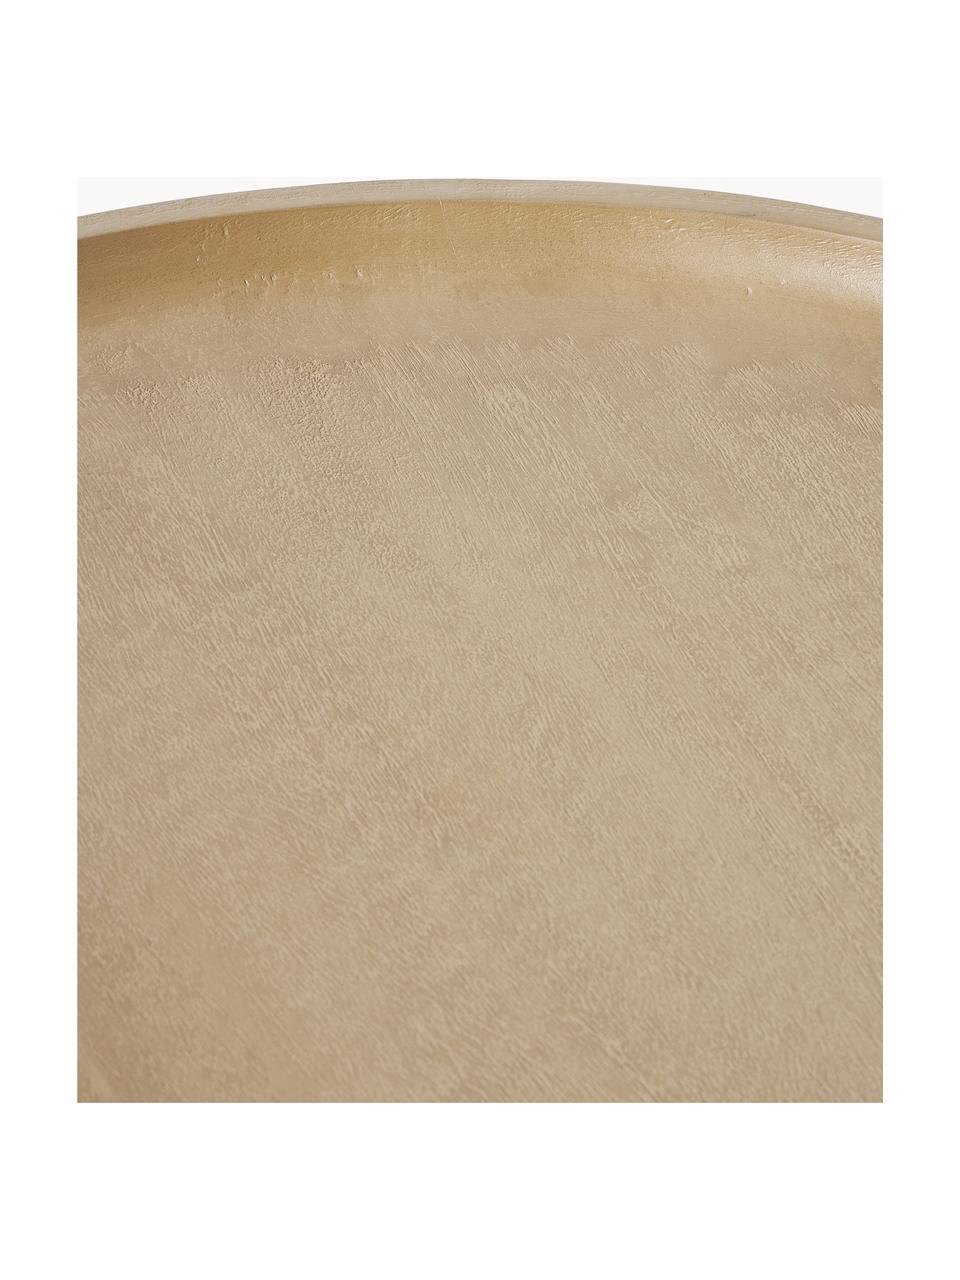 Runder Couchtisch Benno aus Mangoholz, Massives Mangoholz, lackiert, Mangoholz, hell lackiert, Ø 80 cm